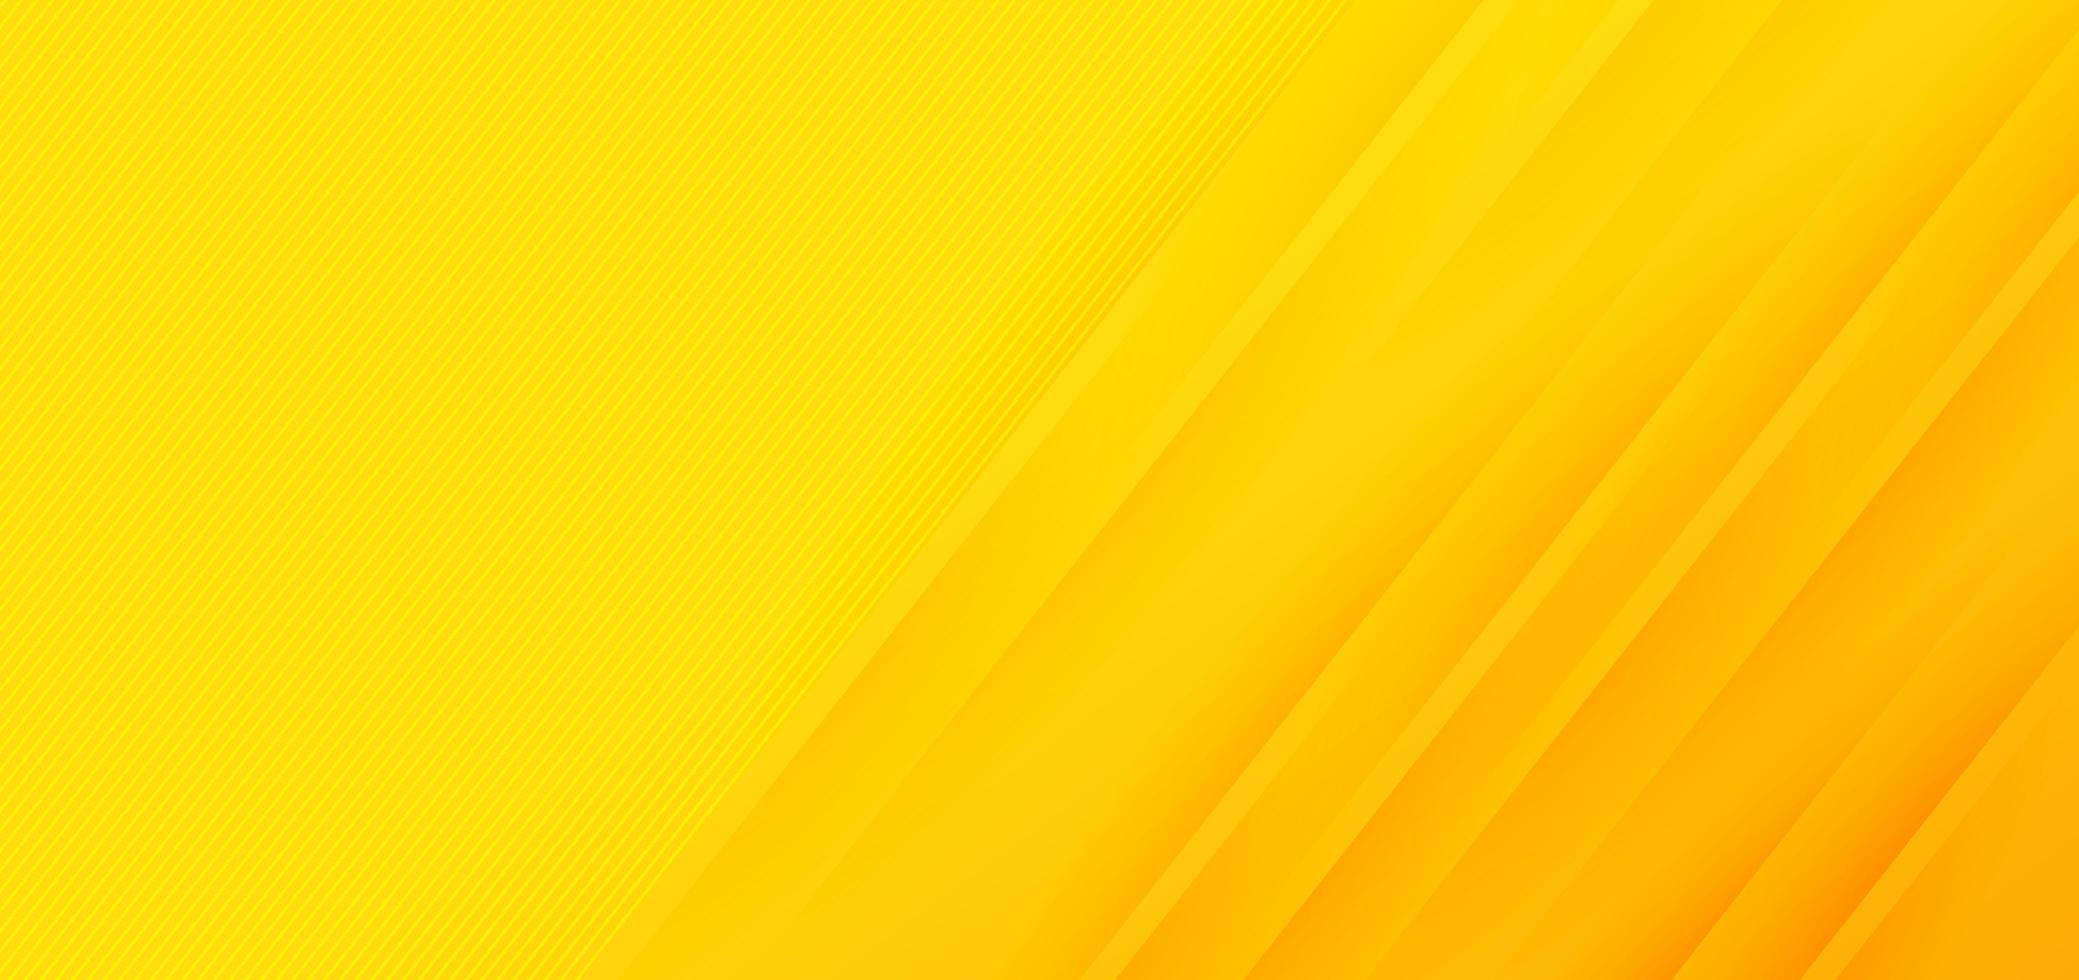 abstracte moderne gele gradiënt diagonale lijnen achtergrond vector